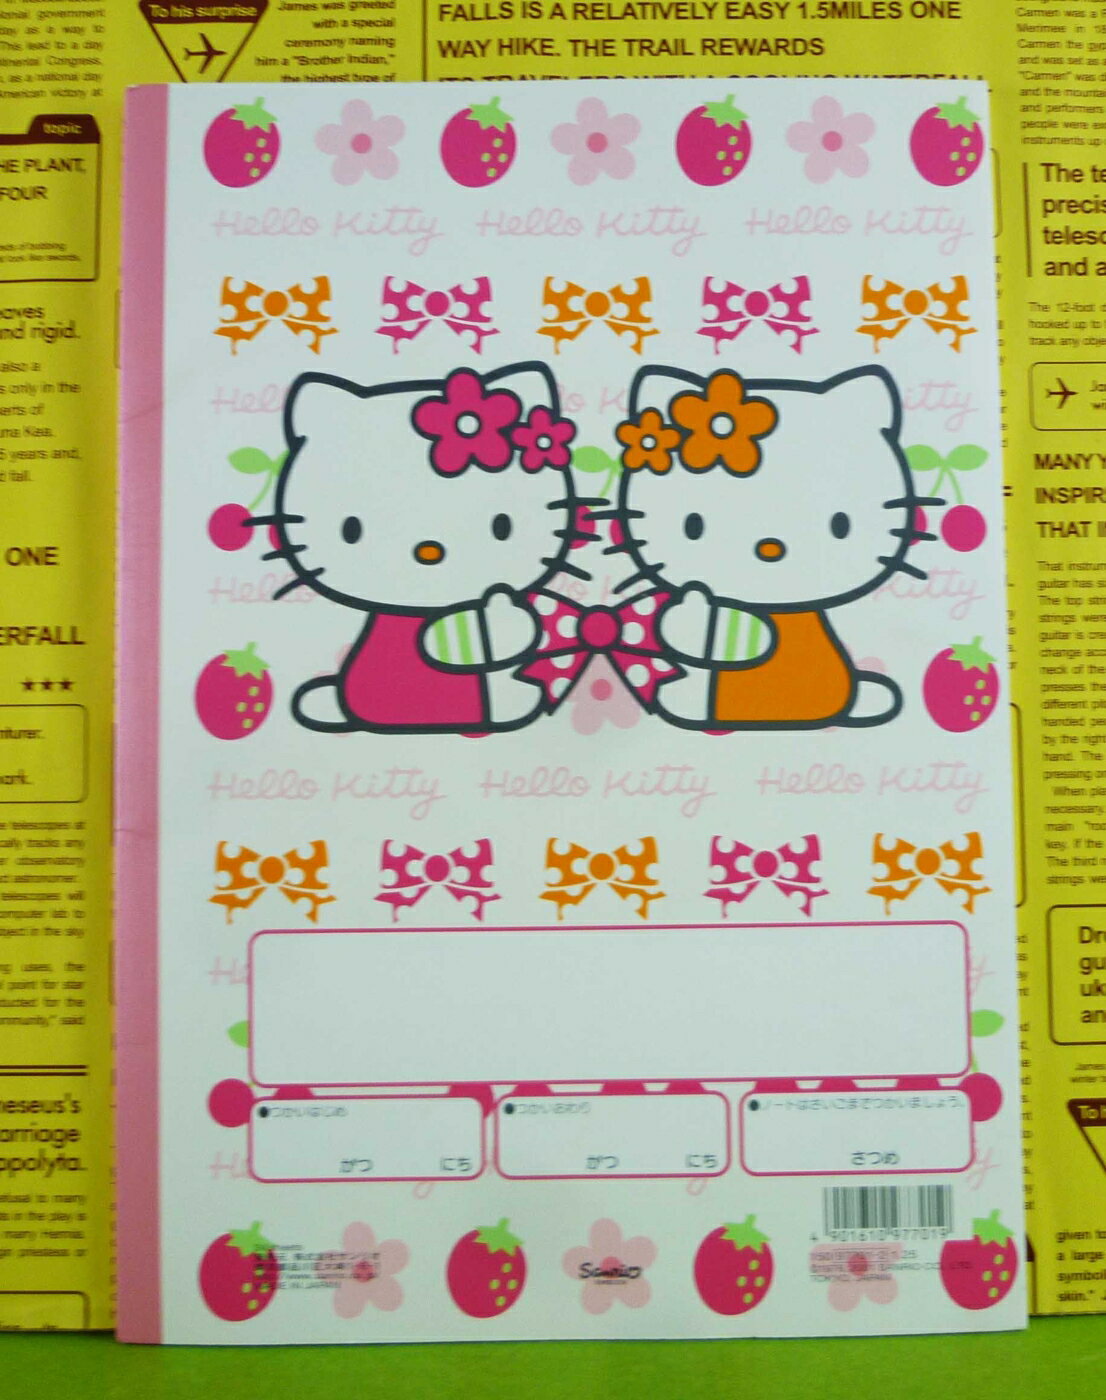 【震撼精品百貨】Hello Kitty 凱蒂貓 空白圖畫本 草莓【共1款】 震撼日式精品百貨